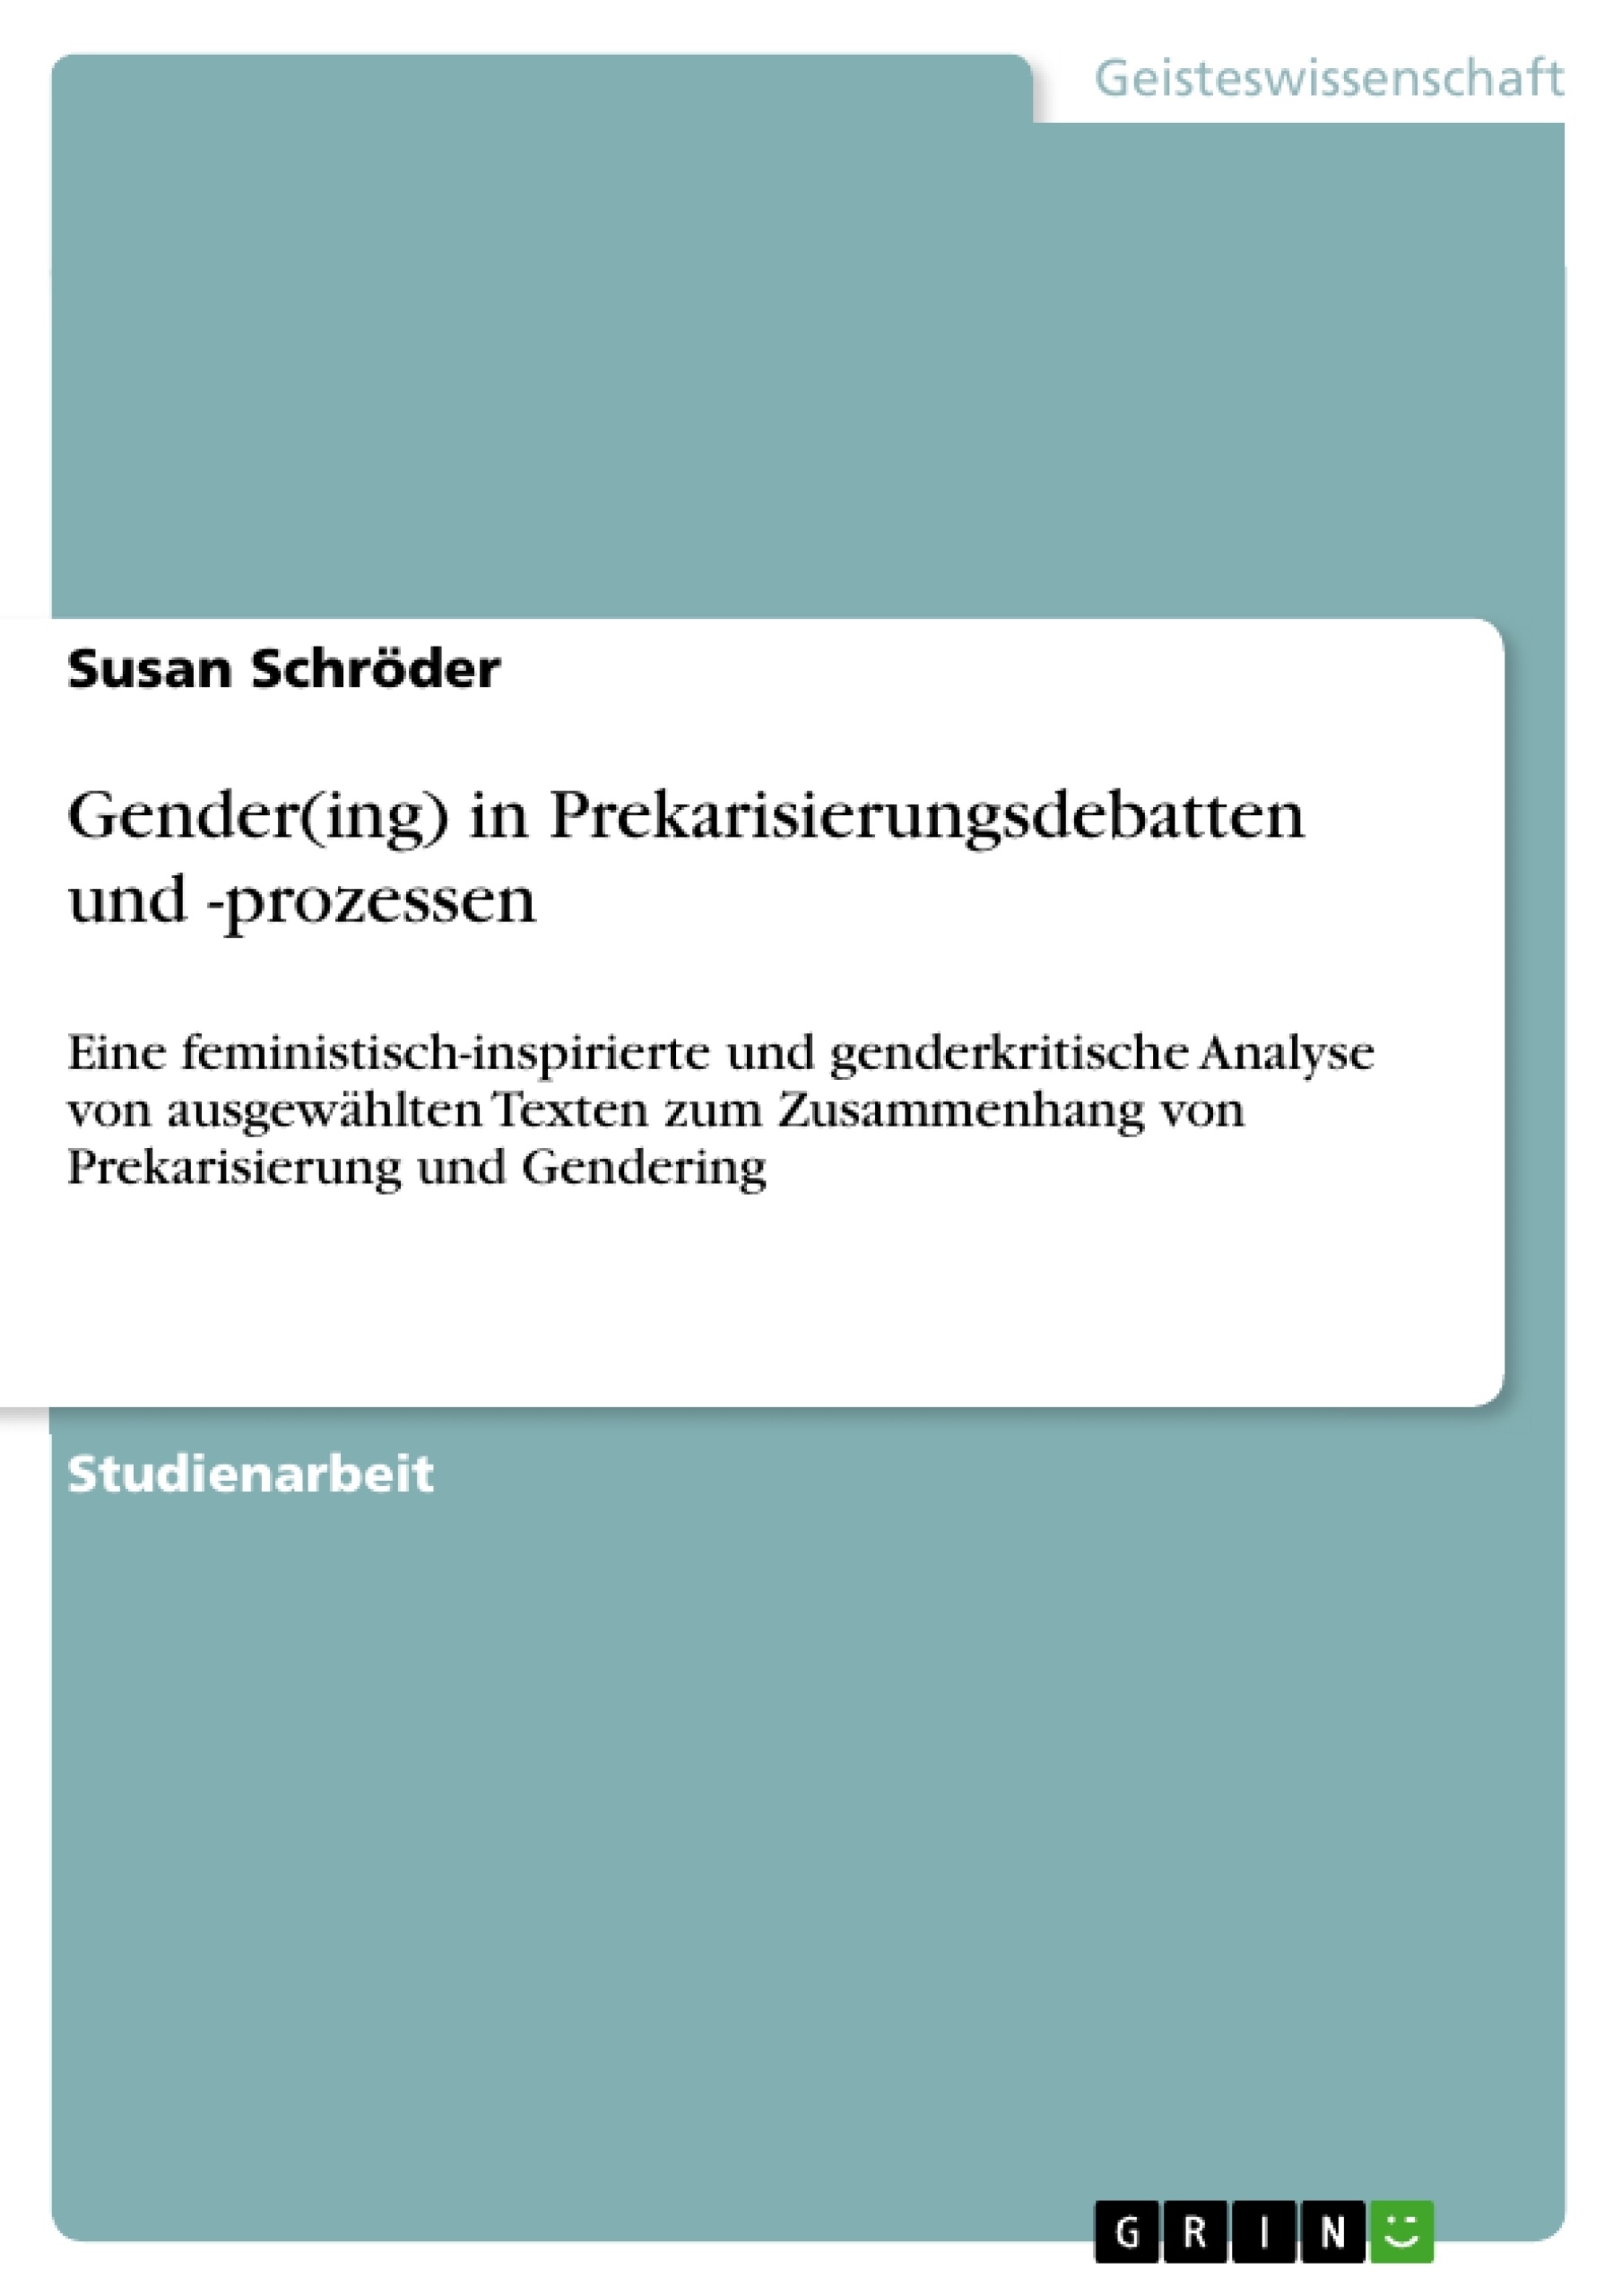 Titre: Gender(ing) in Prekarisierungsdebatten und -prozessen